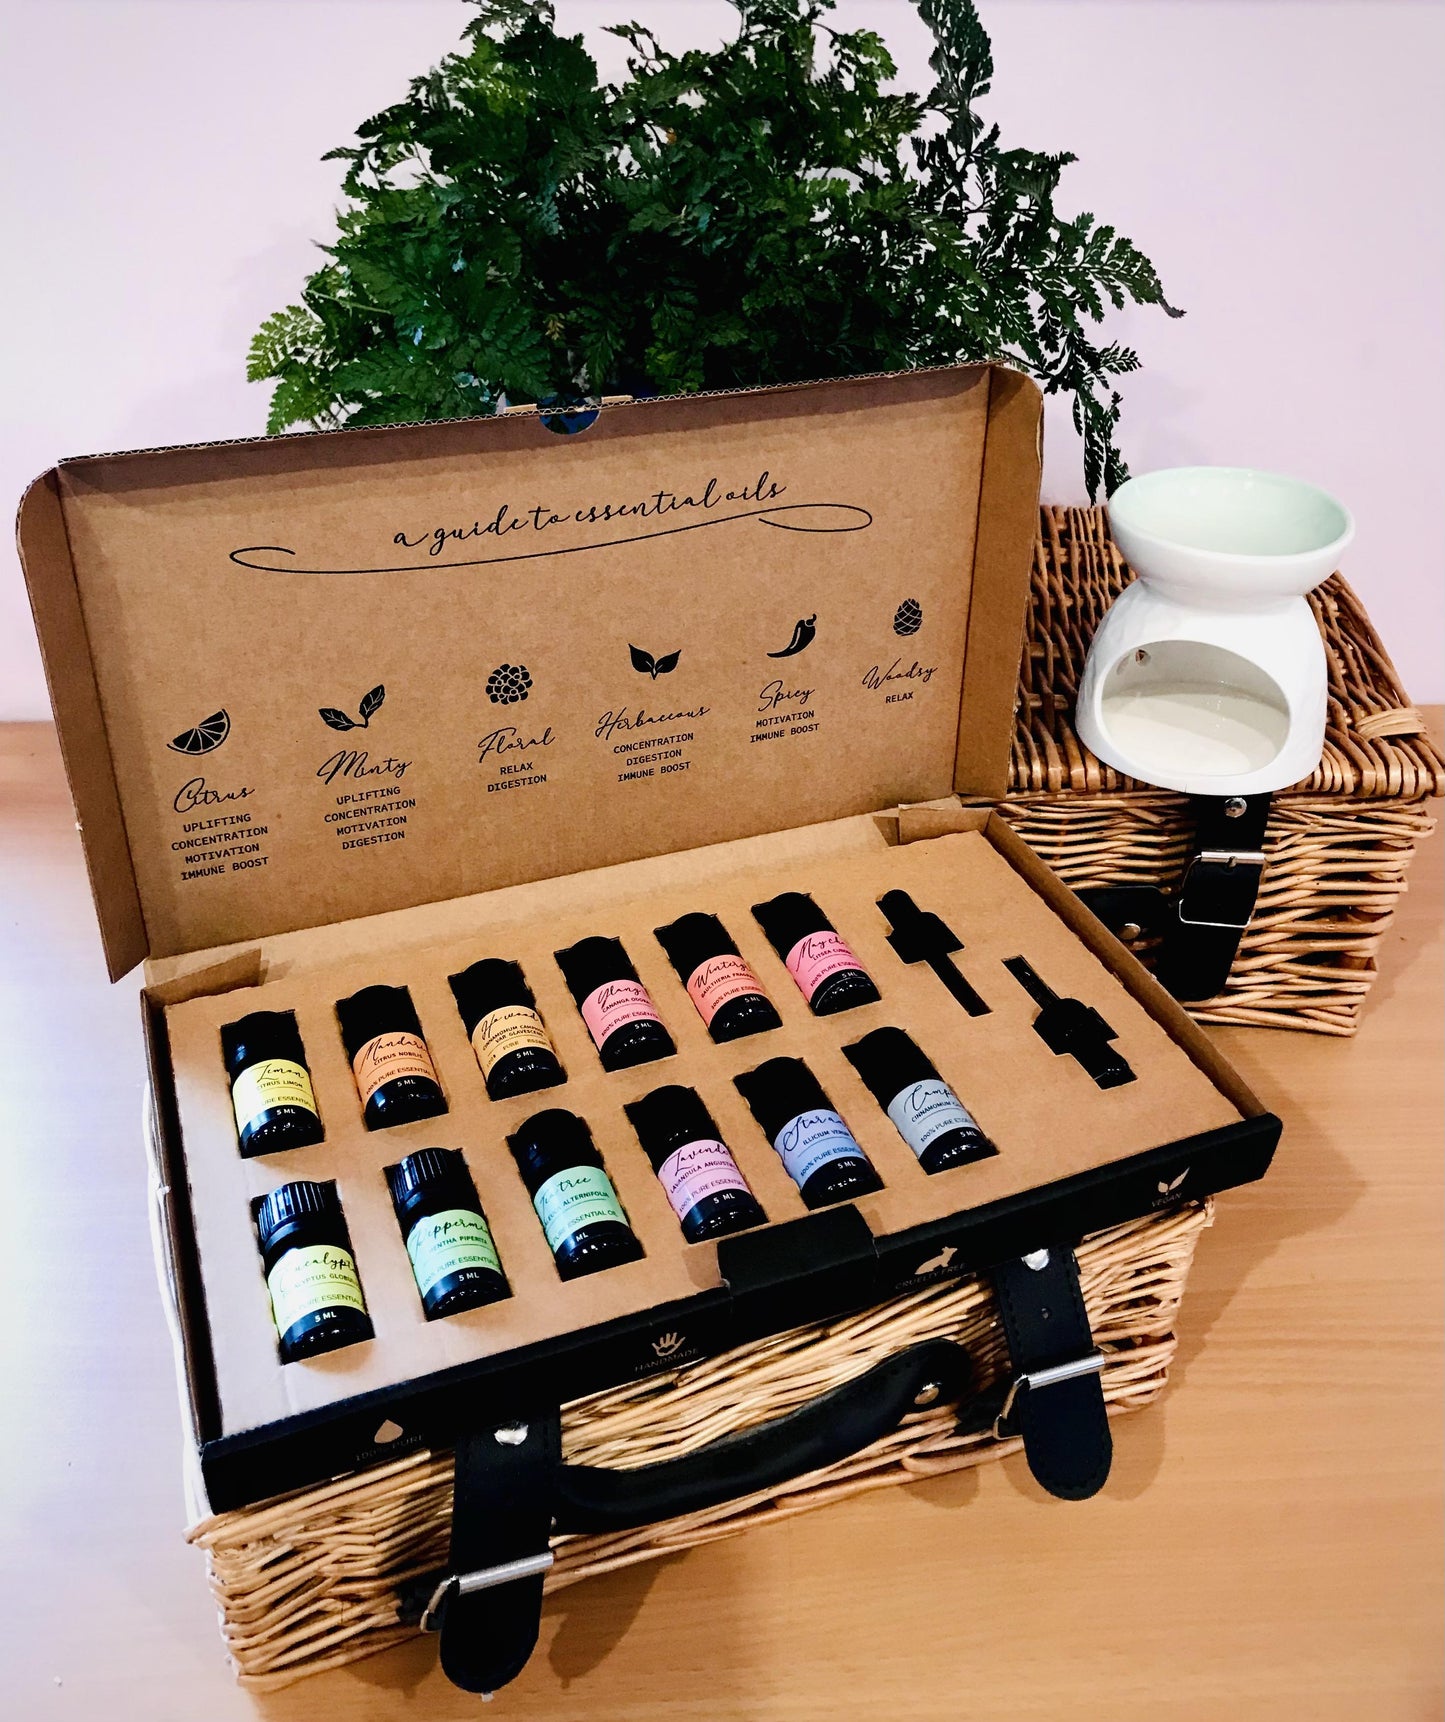 Aromatherapy Self-Care Kit